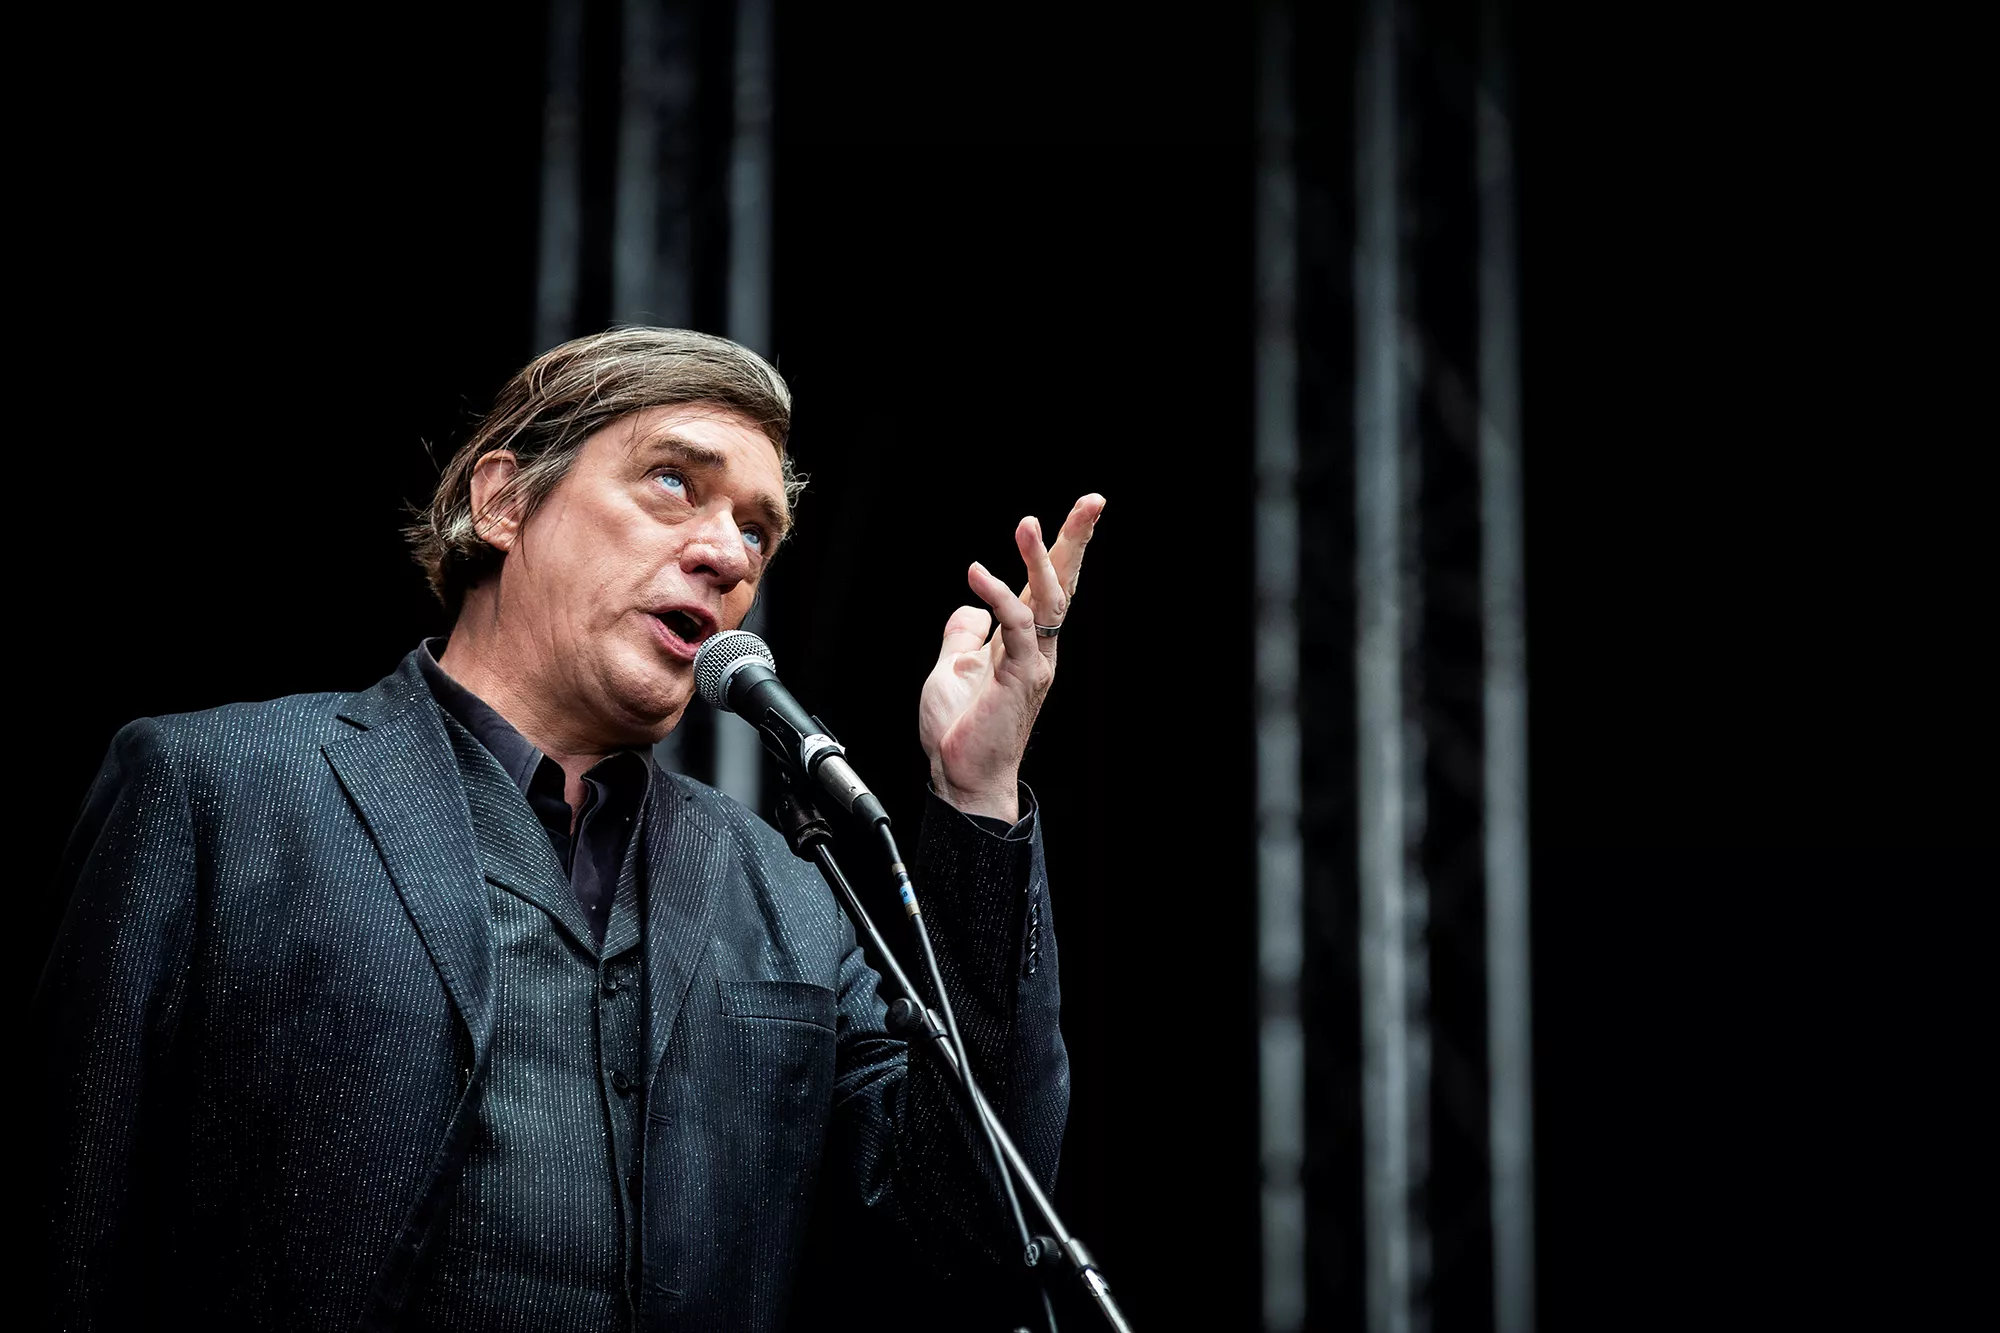 Einstürzende Neubauten giver to koncerter i Danmark